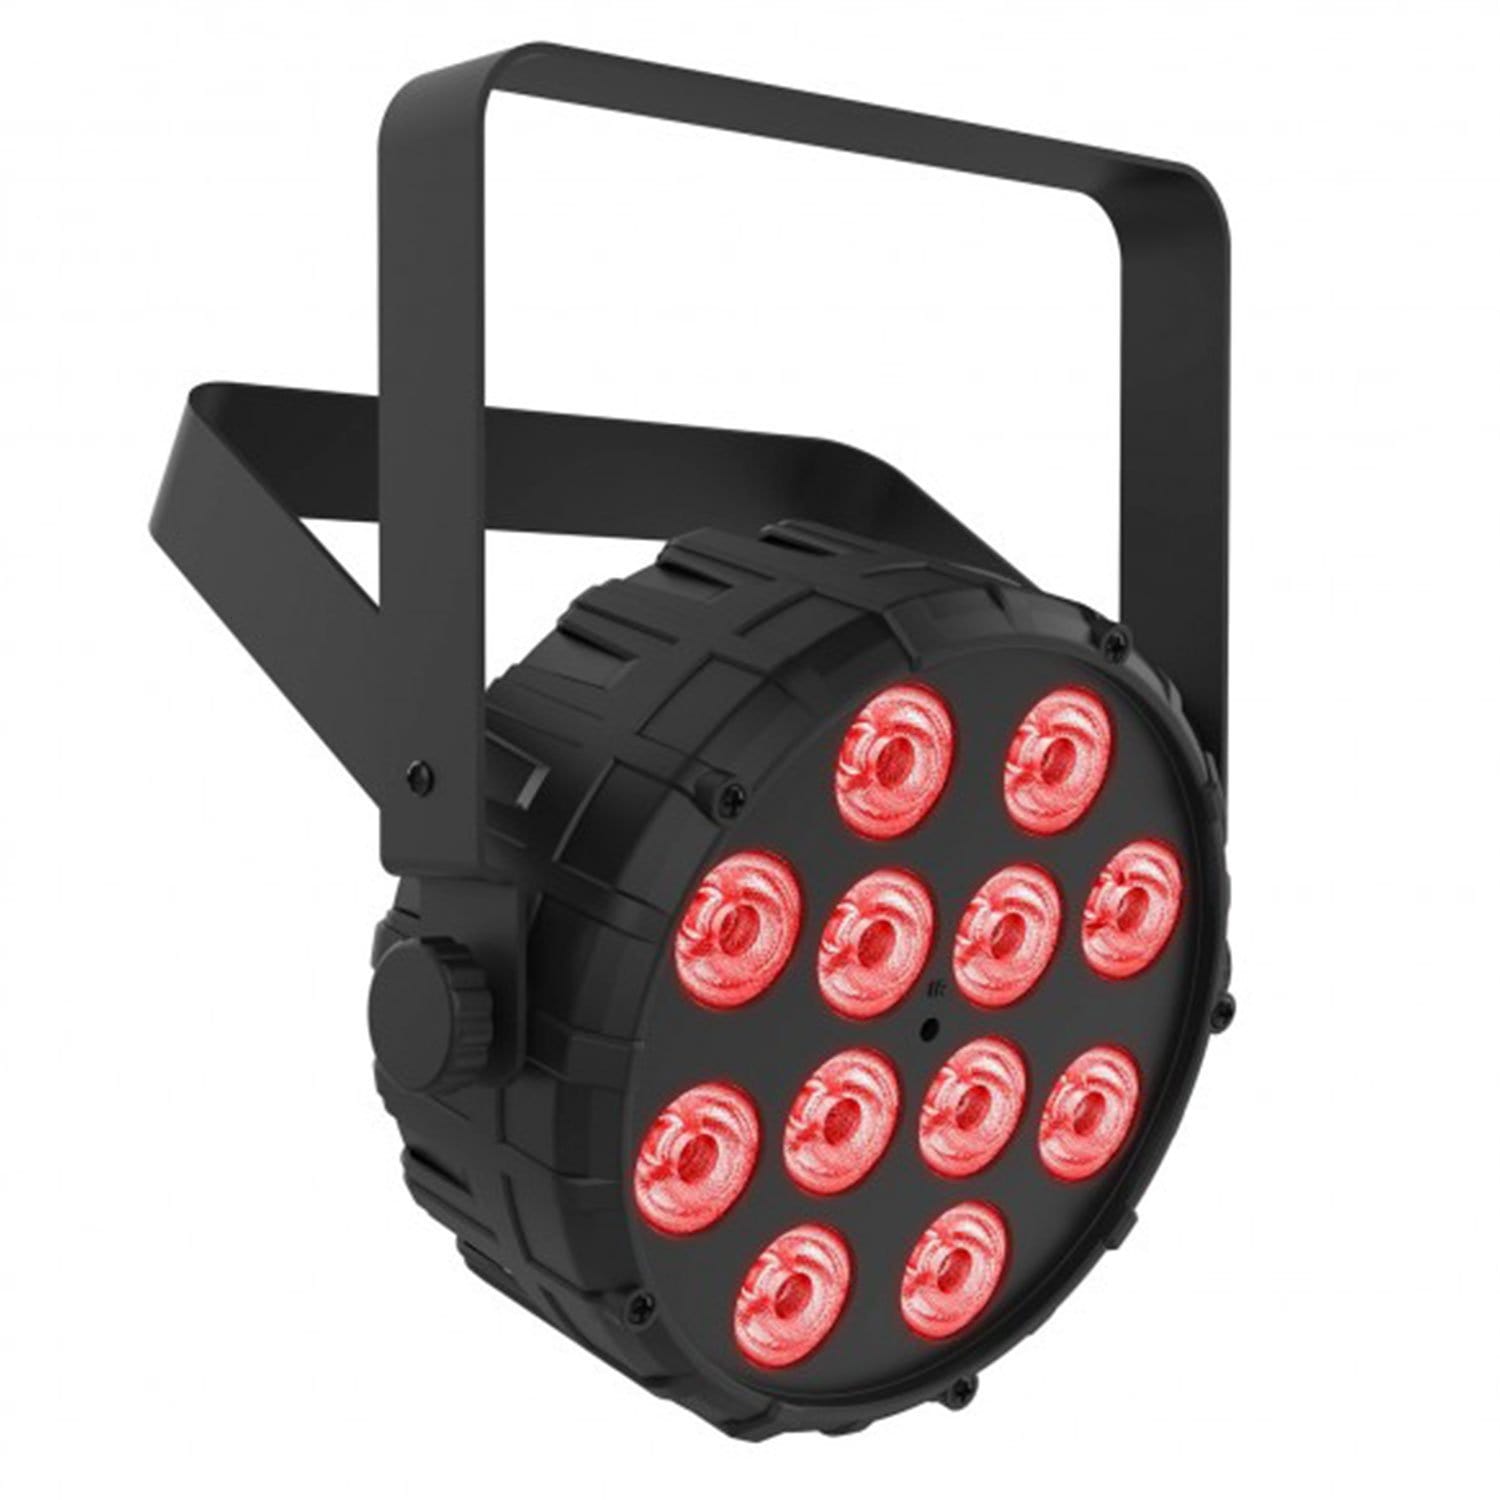 Chauvet SlimPAR T12 BT LED Wash Light 4-Pack with Gator Bag - PSSL ProSound and Stage Lighting